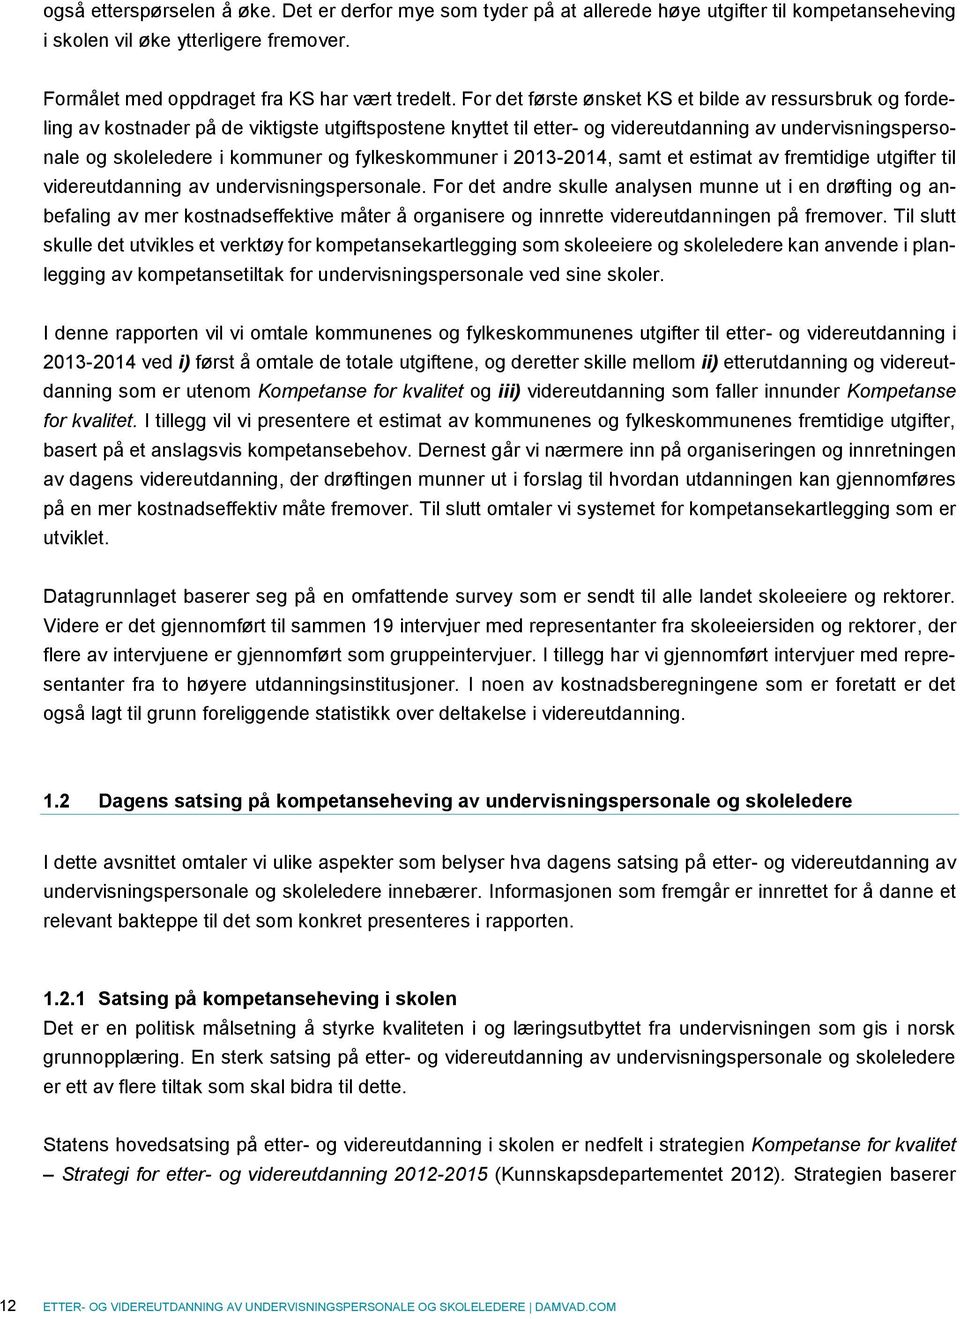 fylkeskommuner i 2013-2014, samt et estimat av fremtidige utgifter til videreutdanning av undervisningspersonale.